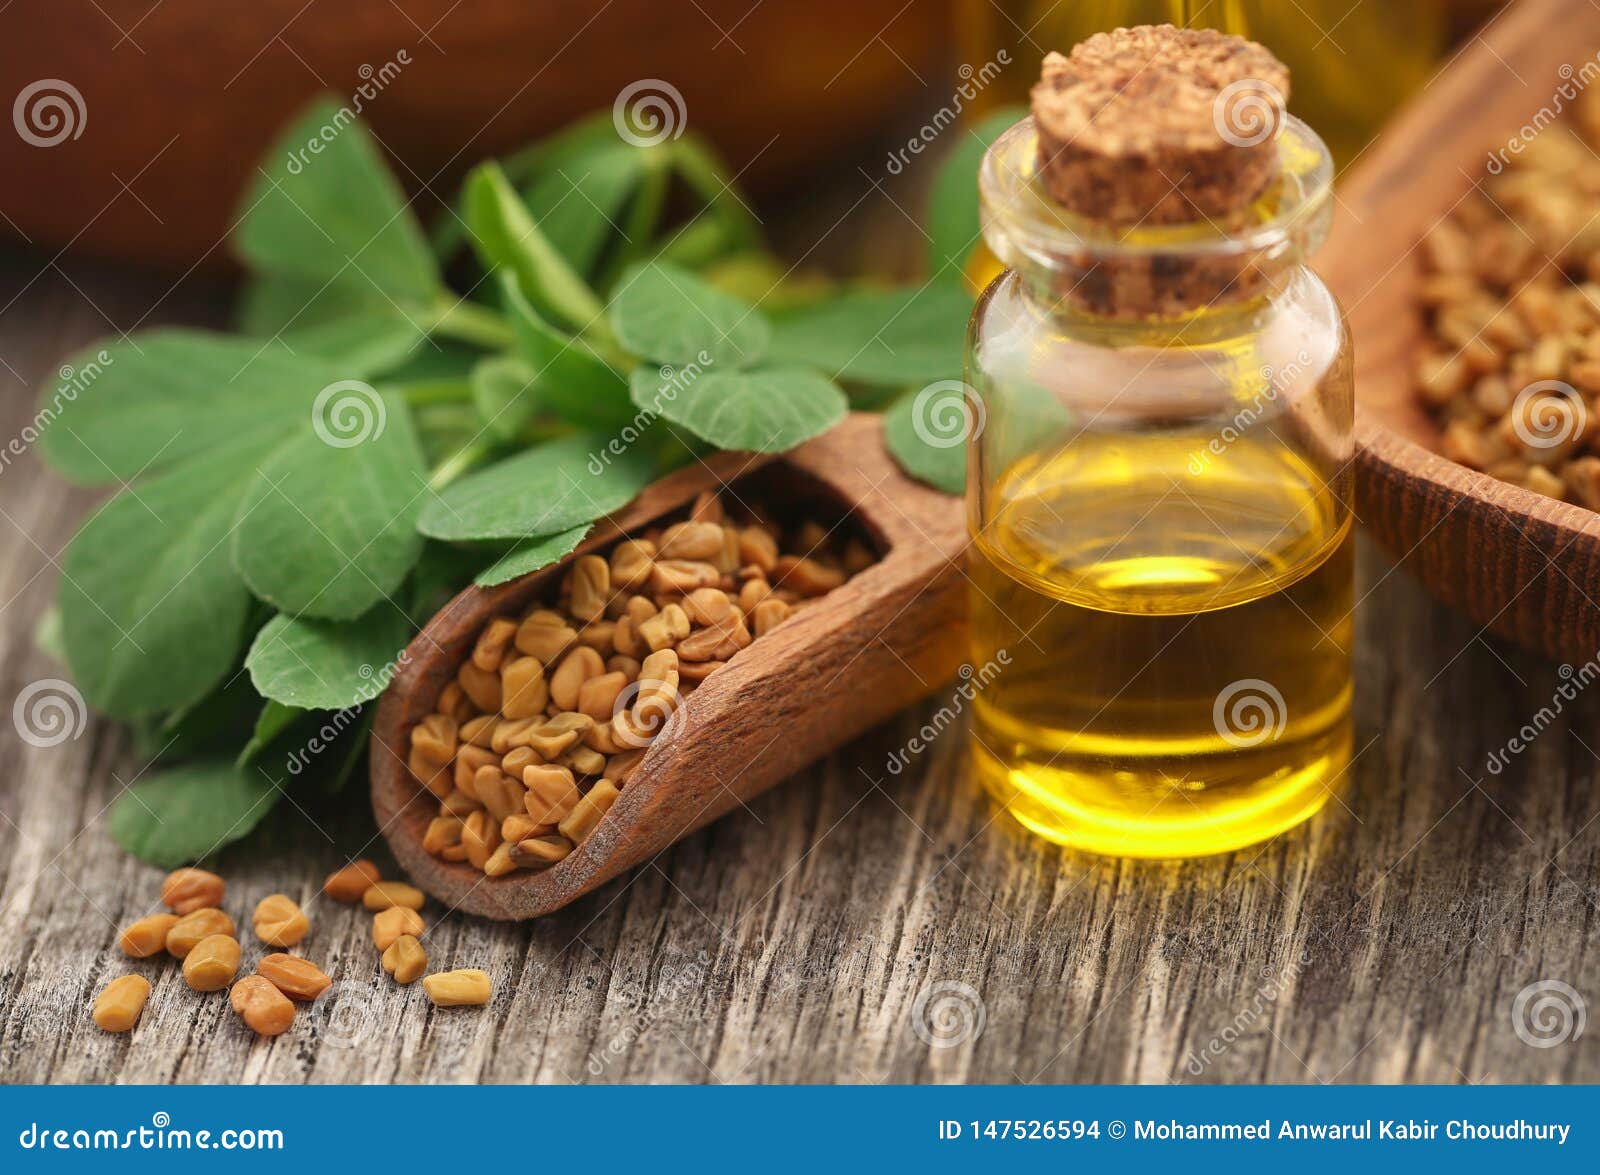 fenugreek seeds with oil in bottle